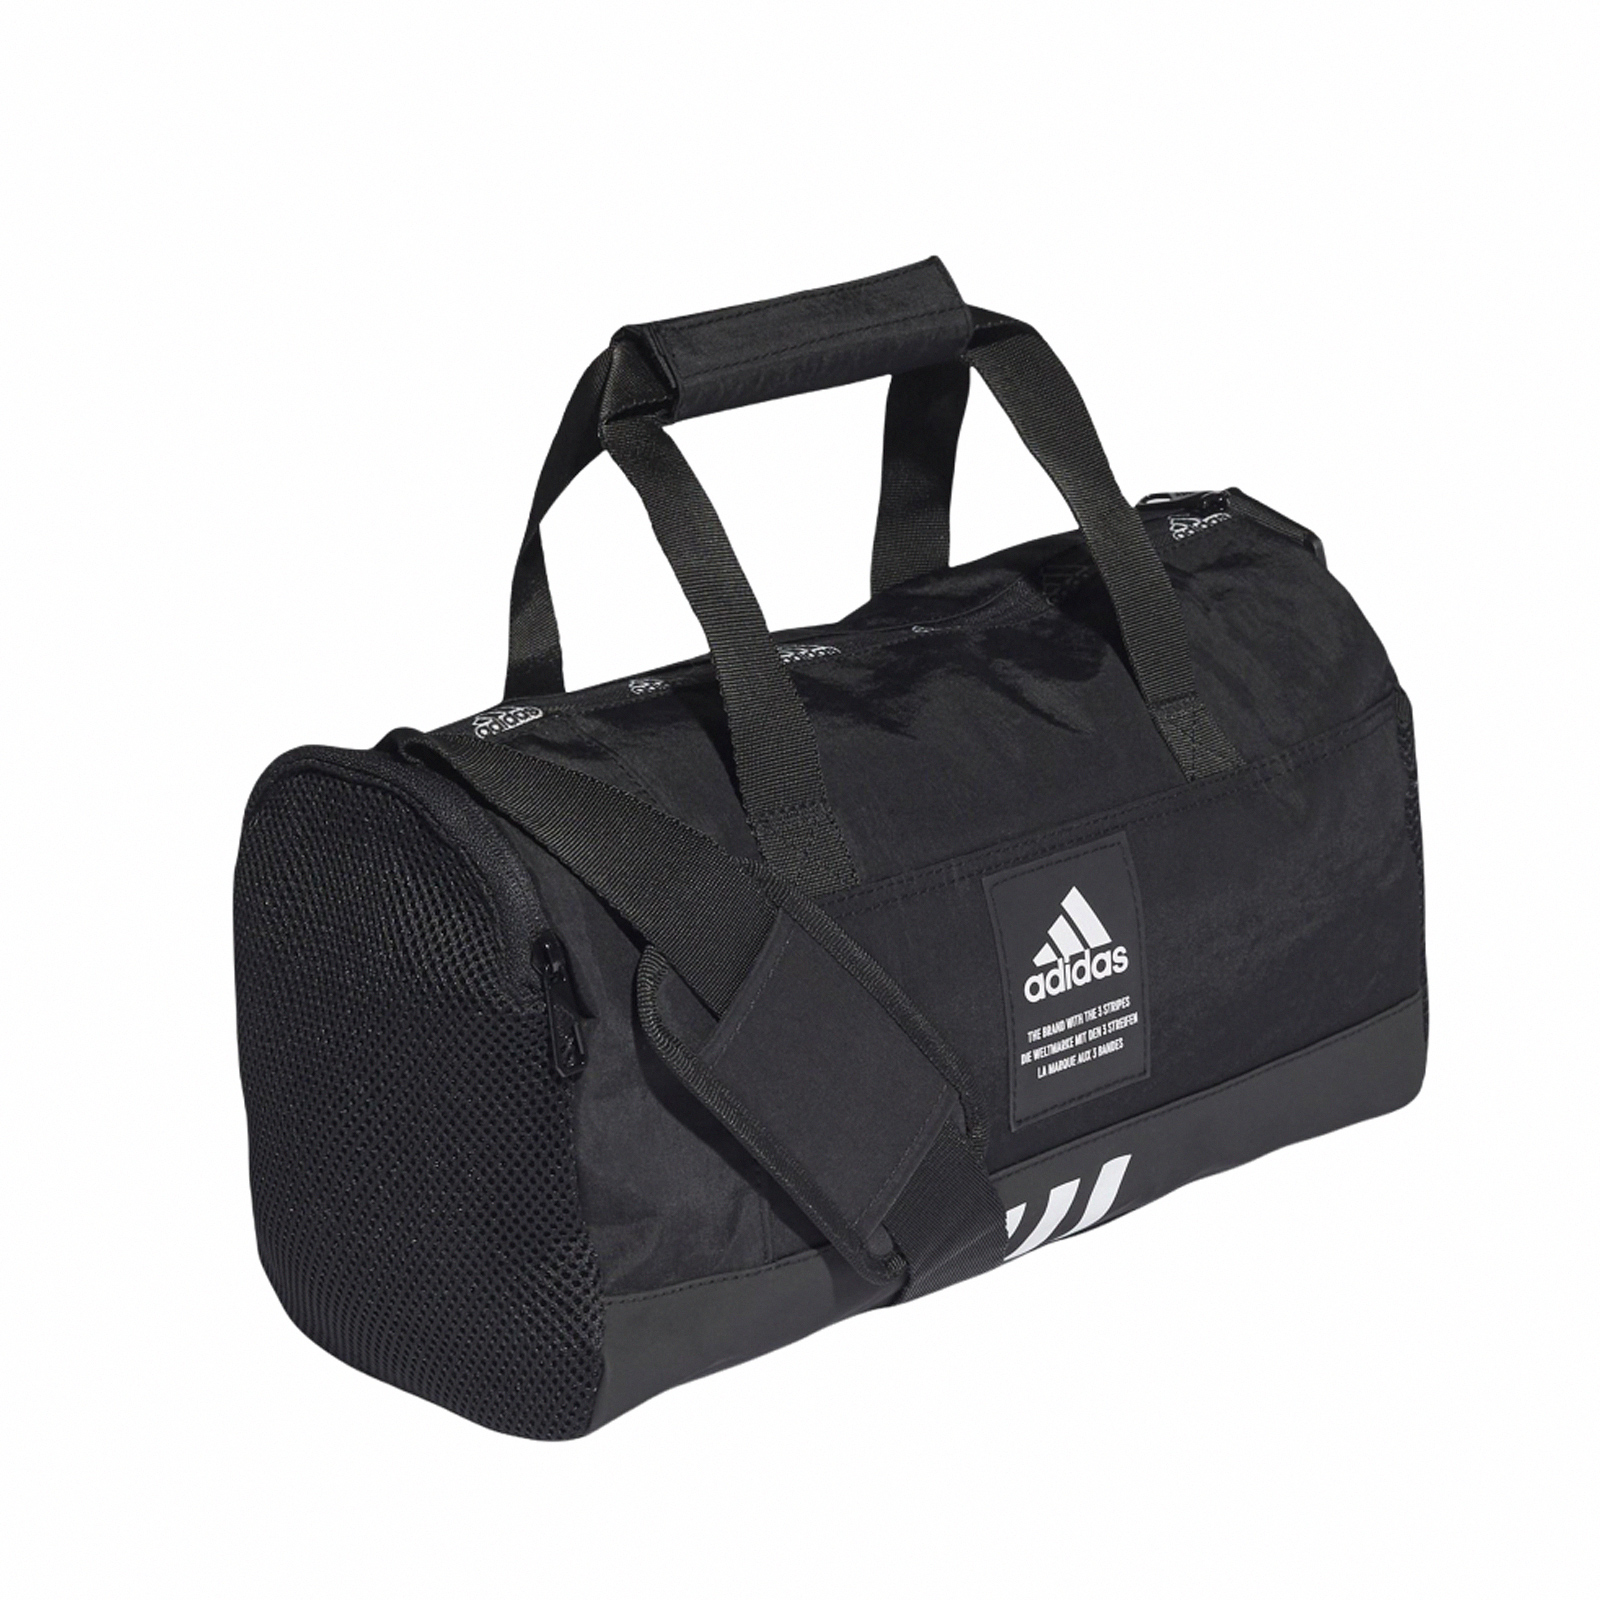 Adidas 健身包 4Athlts 行李袋 黑 愛迪達 小包 圓筒包 手提袋 側背包 運動包 HB1316